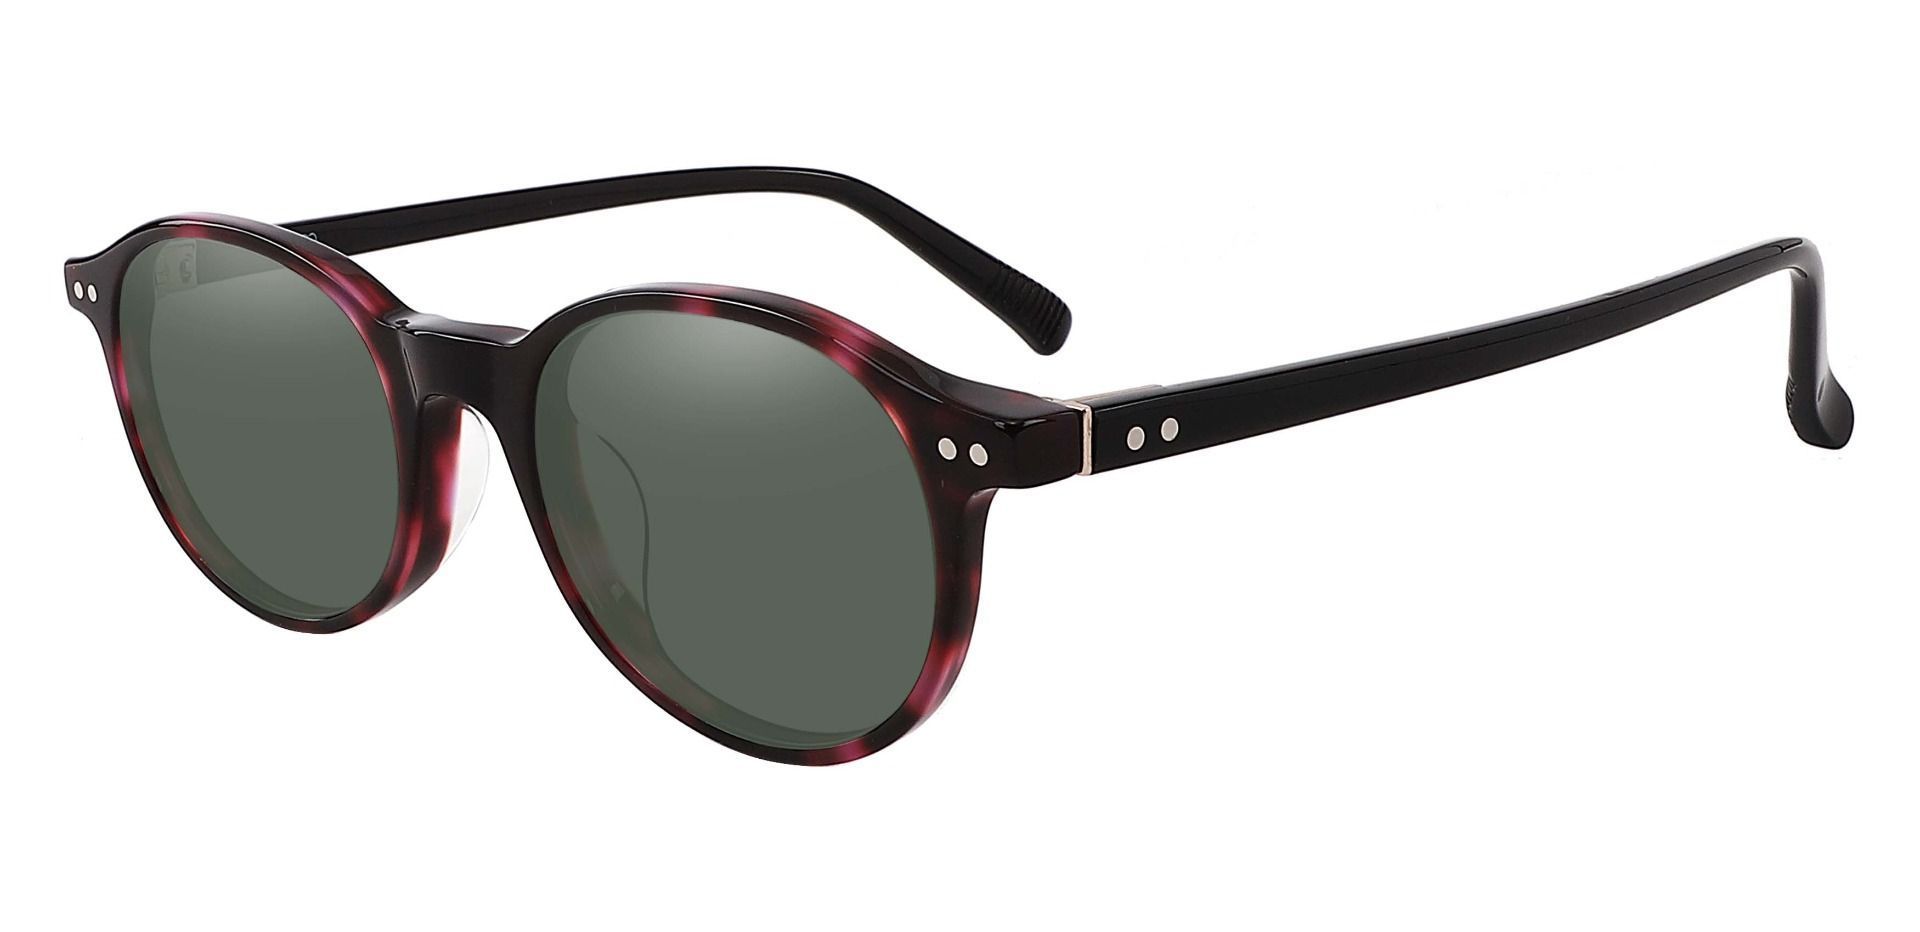 Avon Oval Reading Sunglasses - Tortoise Frame With Green Lenses